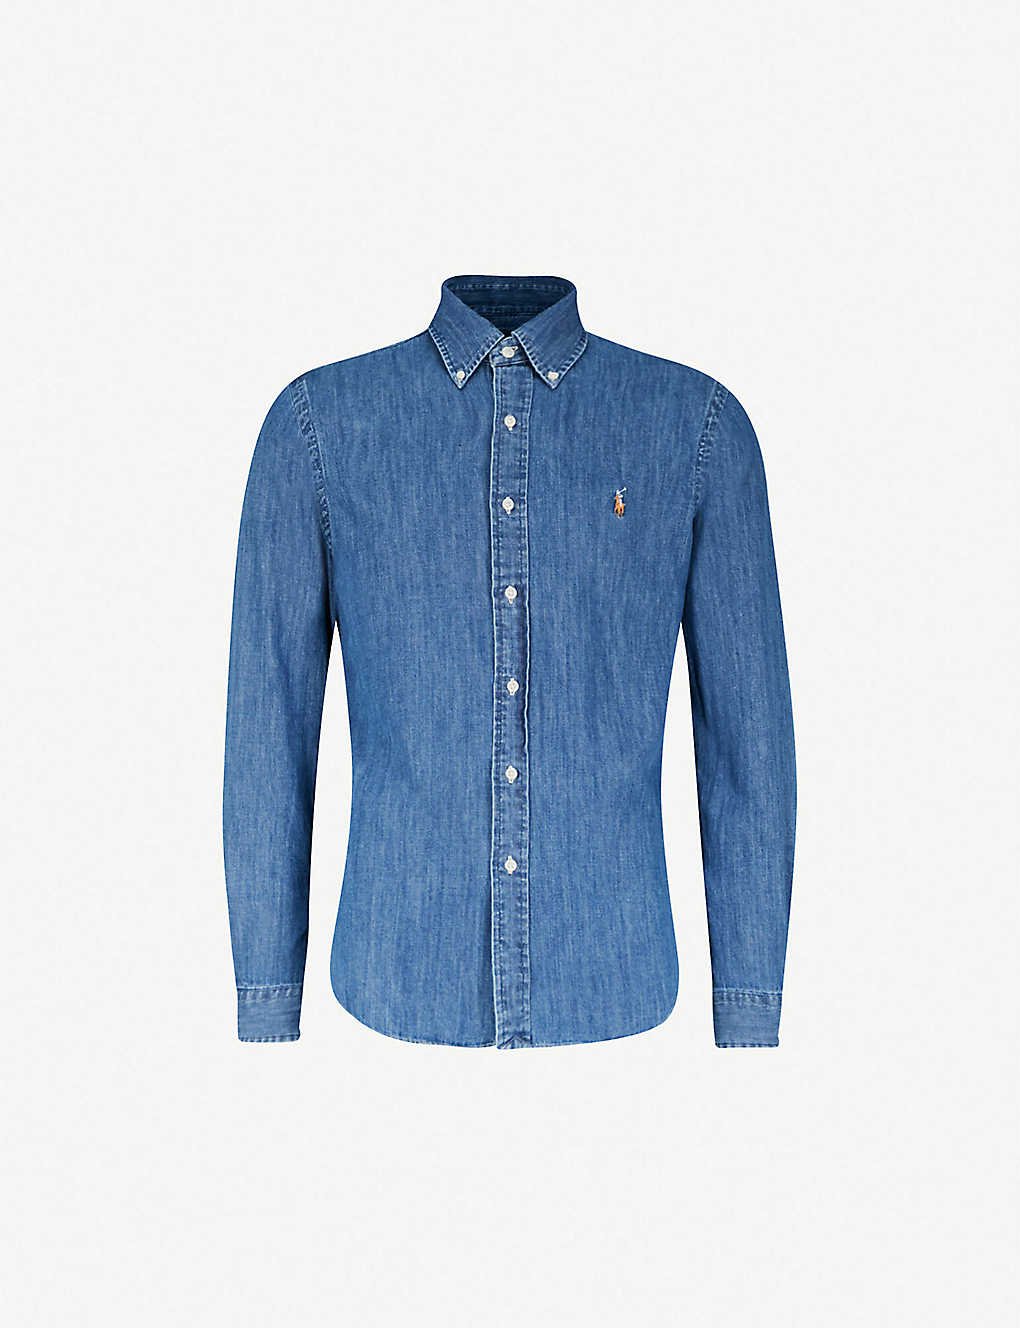 blue jean ralph lauren shirt